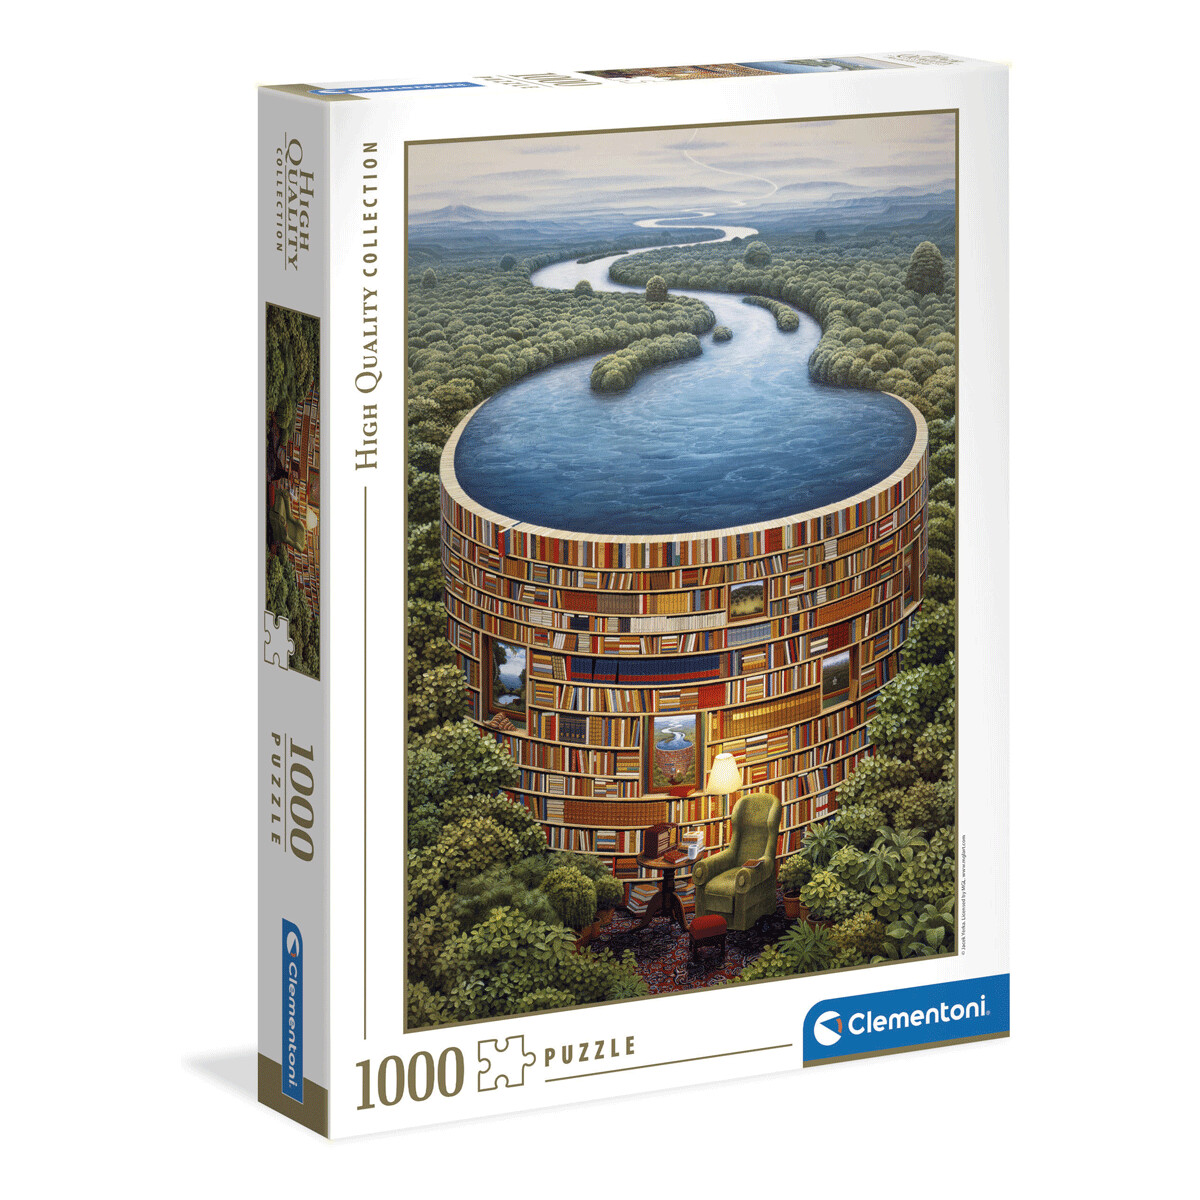 Clementoni - 39603 - puzzle 1000 hqc bibliodame 70 x 50 cm - CLEMENTONI